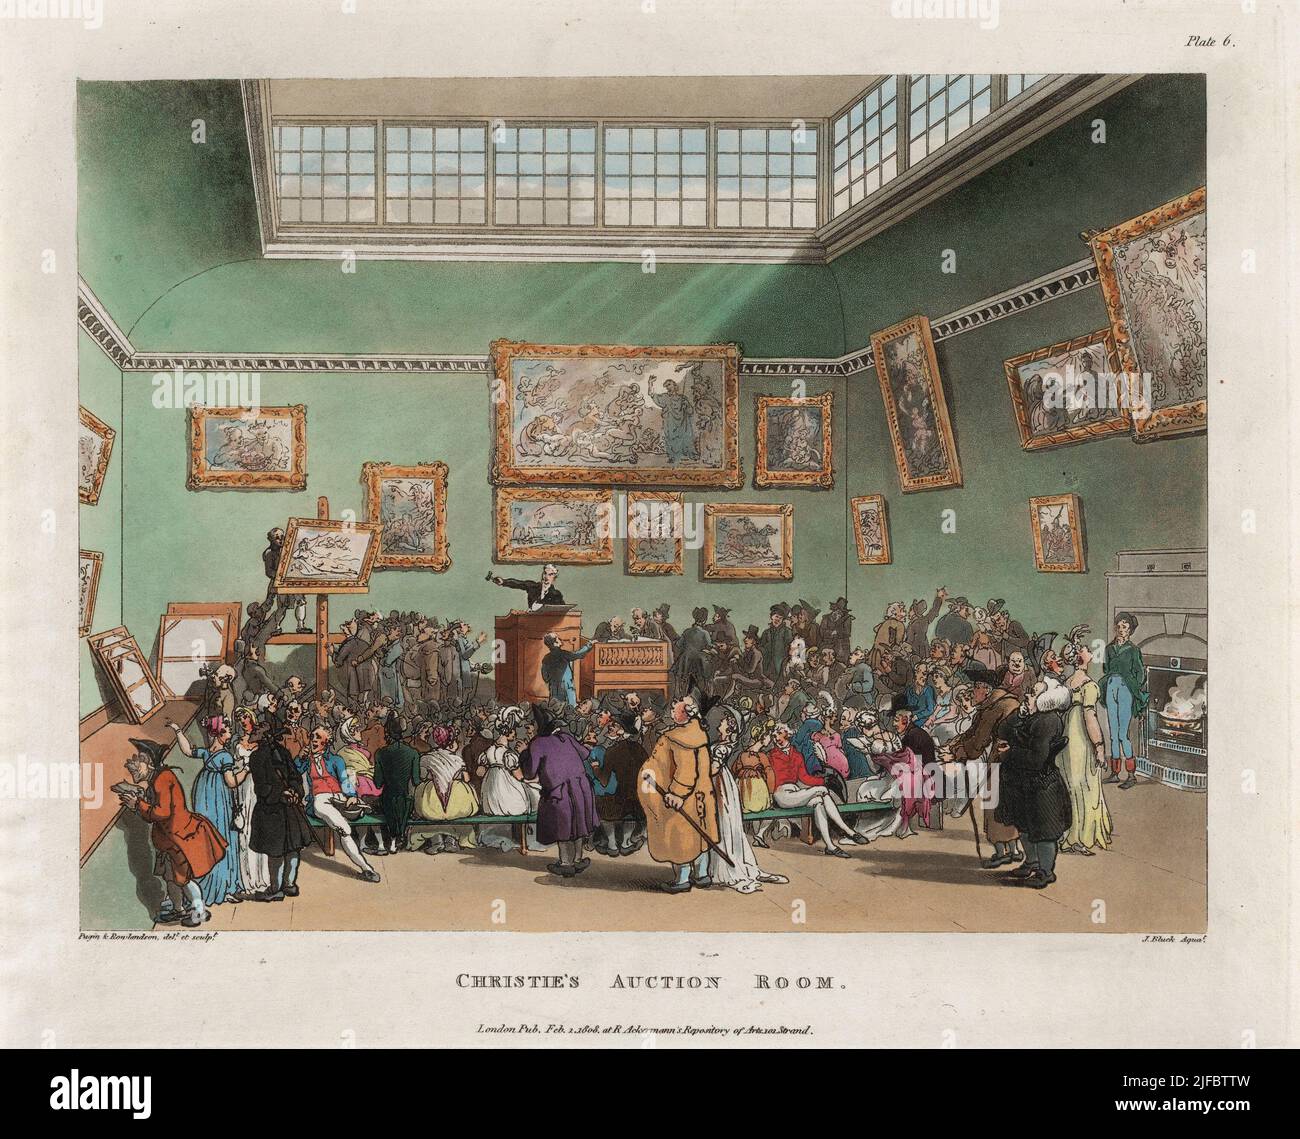 Christie’s Auction Room, Londra, 1 febbraio 1808 artista: Thomas Rowlandson (1756-1827) artista e caricaturista inglese dell’era georgiana. Osservatore sociale, è stato un artista prolifico e tipografo. Credit: Thomas Rowlandson/Alamy Foto Stock